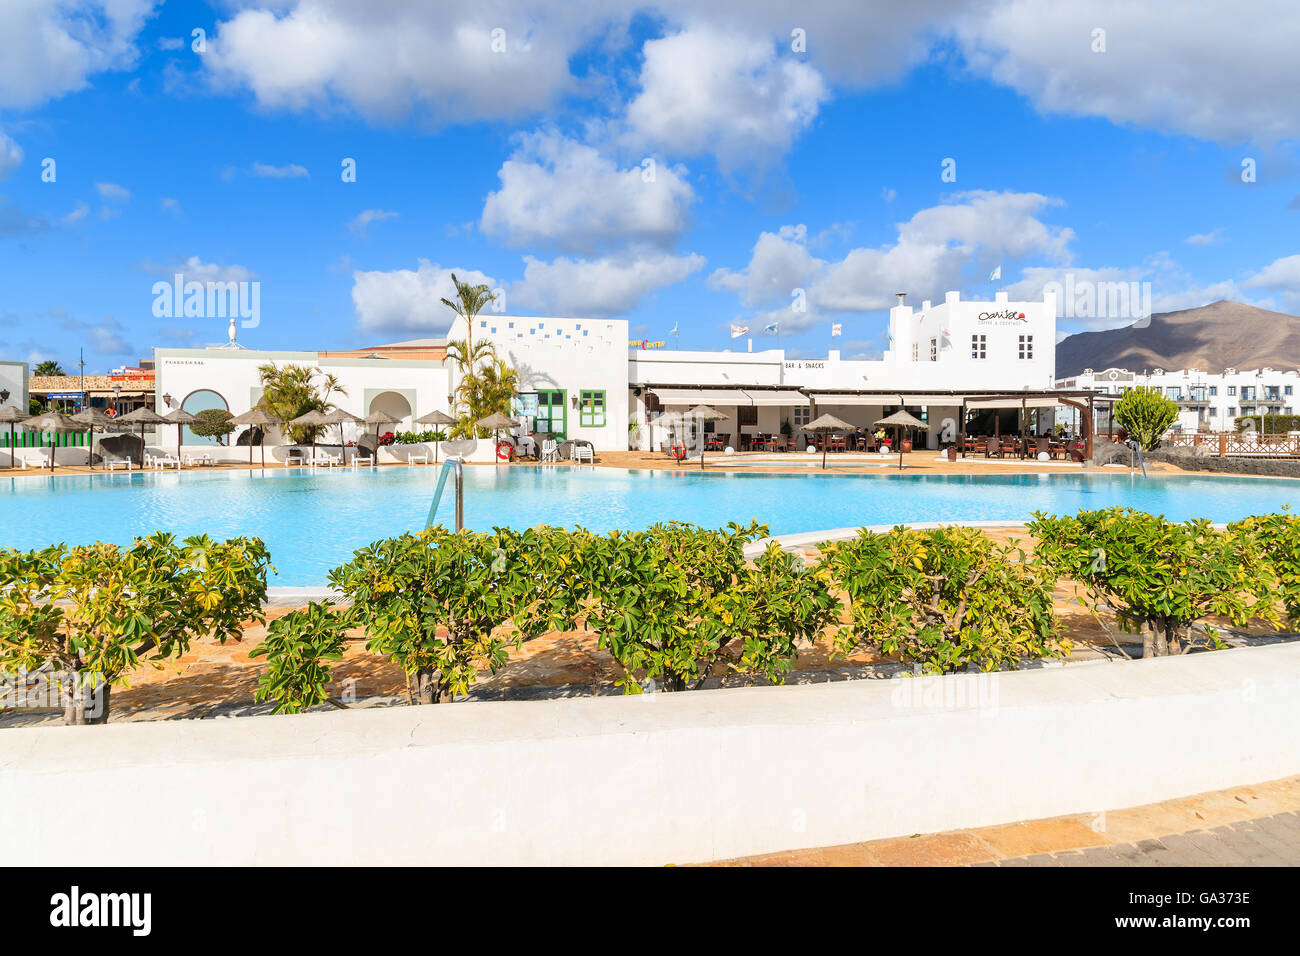 PLAYA BLANCA, Lanzarote Island - Jan 17, 2015: piscina del complesso di appartamenti di lusso costruito nel tradizionale stile delle Canarie a Lanzarote Island. Le isole Canarie sono meta di vacanze. Foto Stock